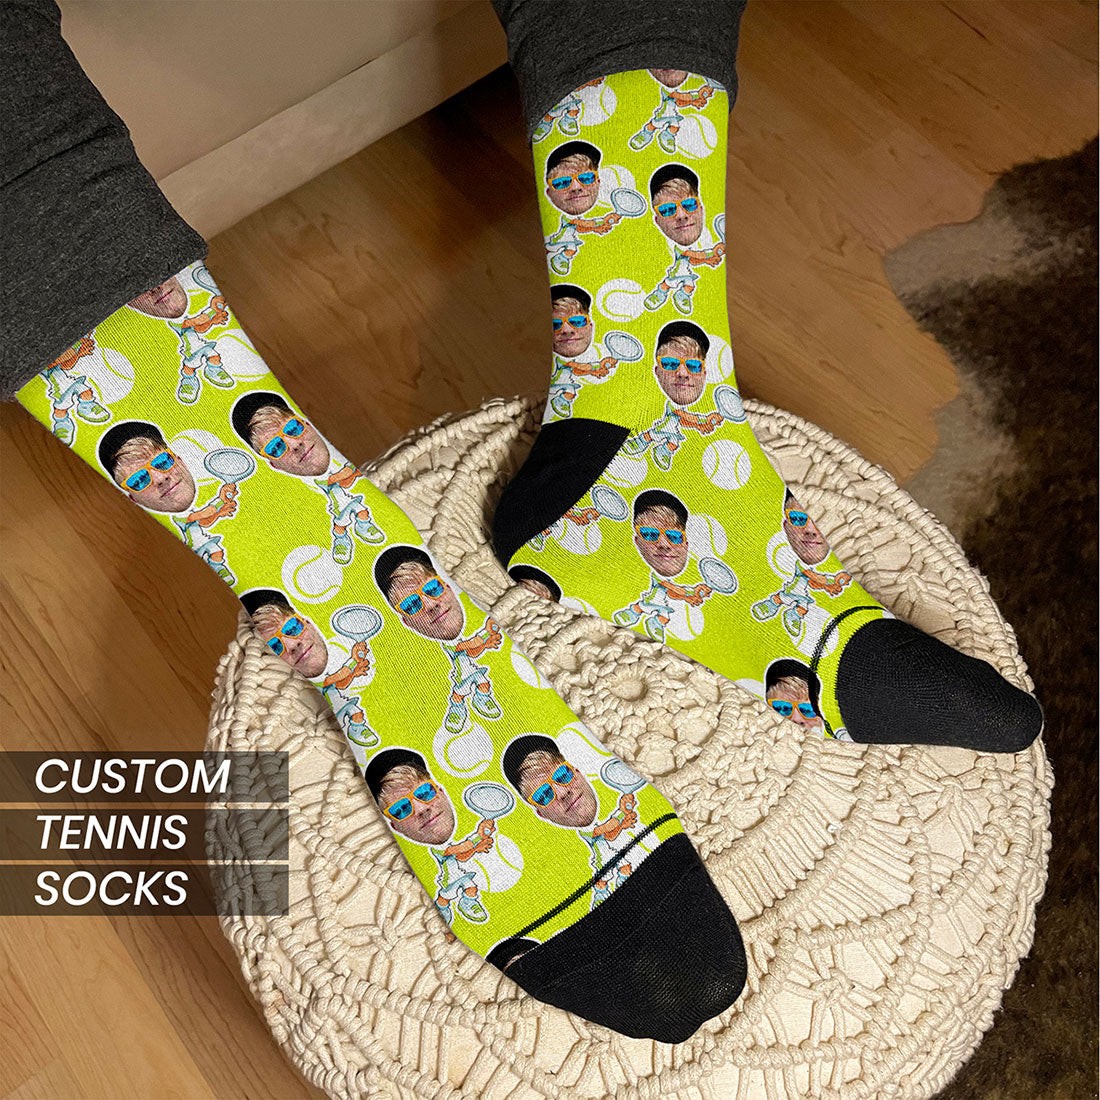 custom tennis socks with faces